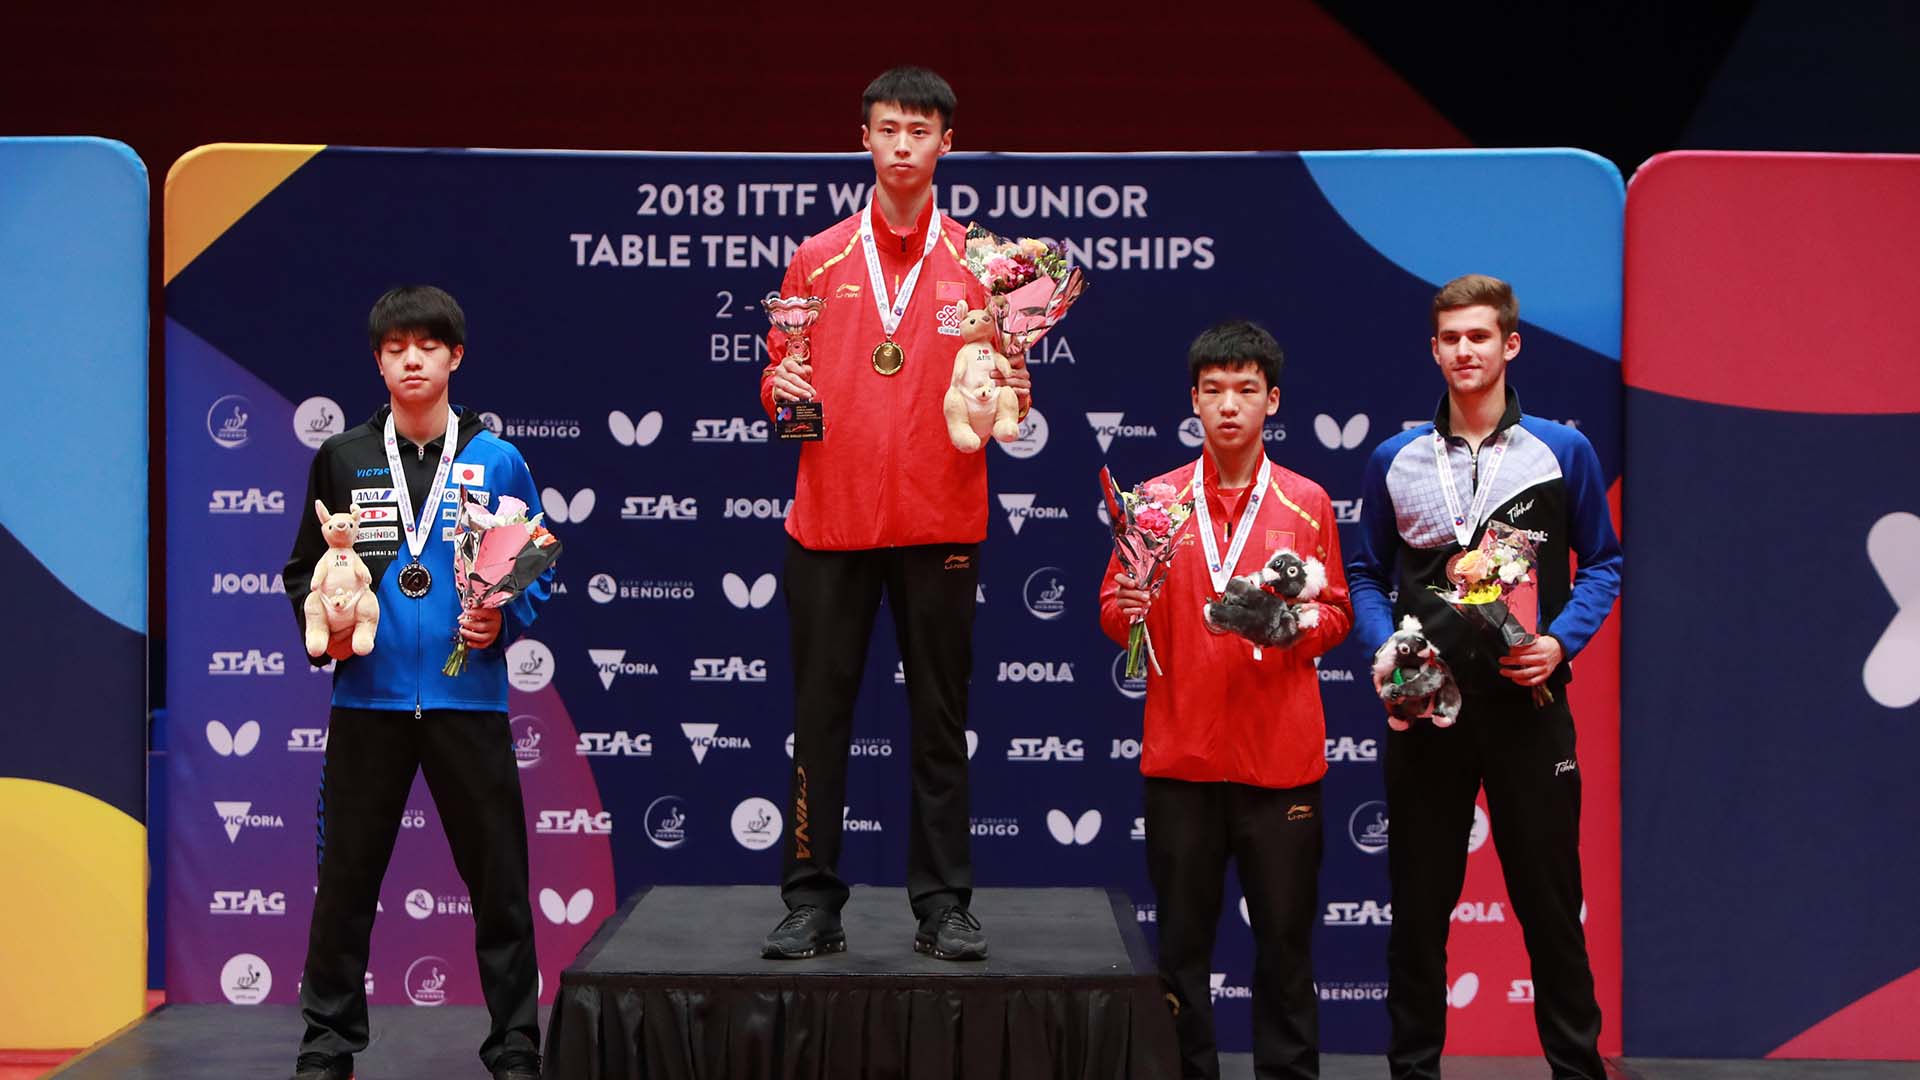 Campionati Mondiali Juniores 2018 podio singolare maschile